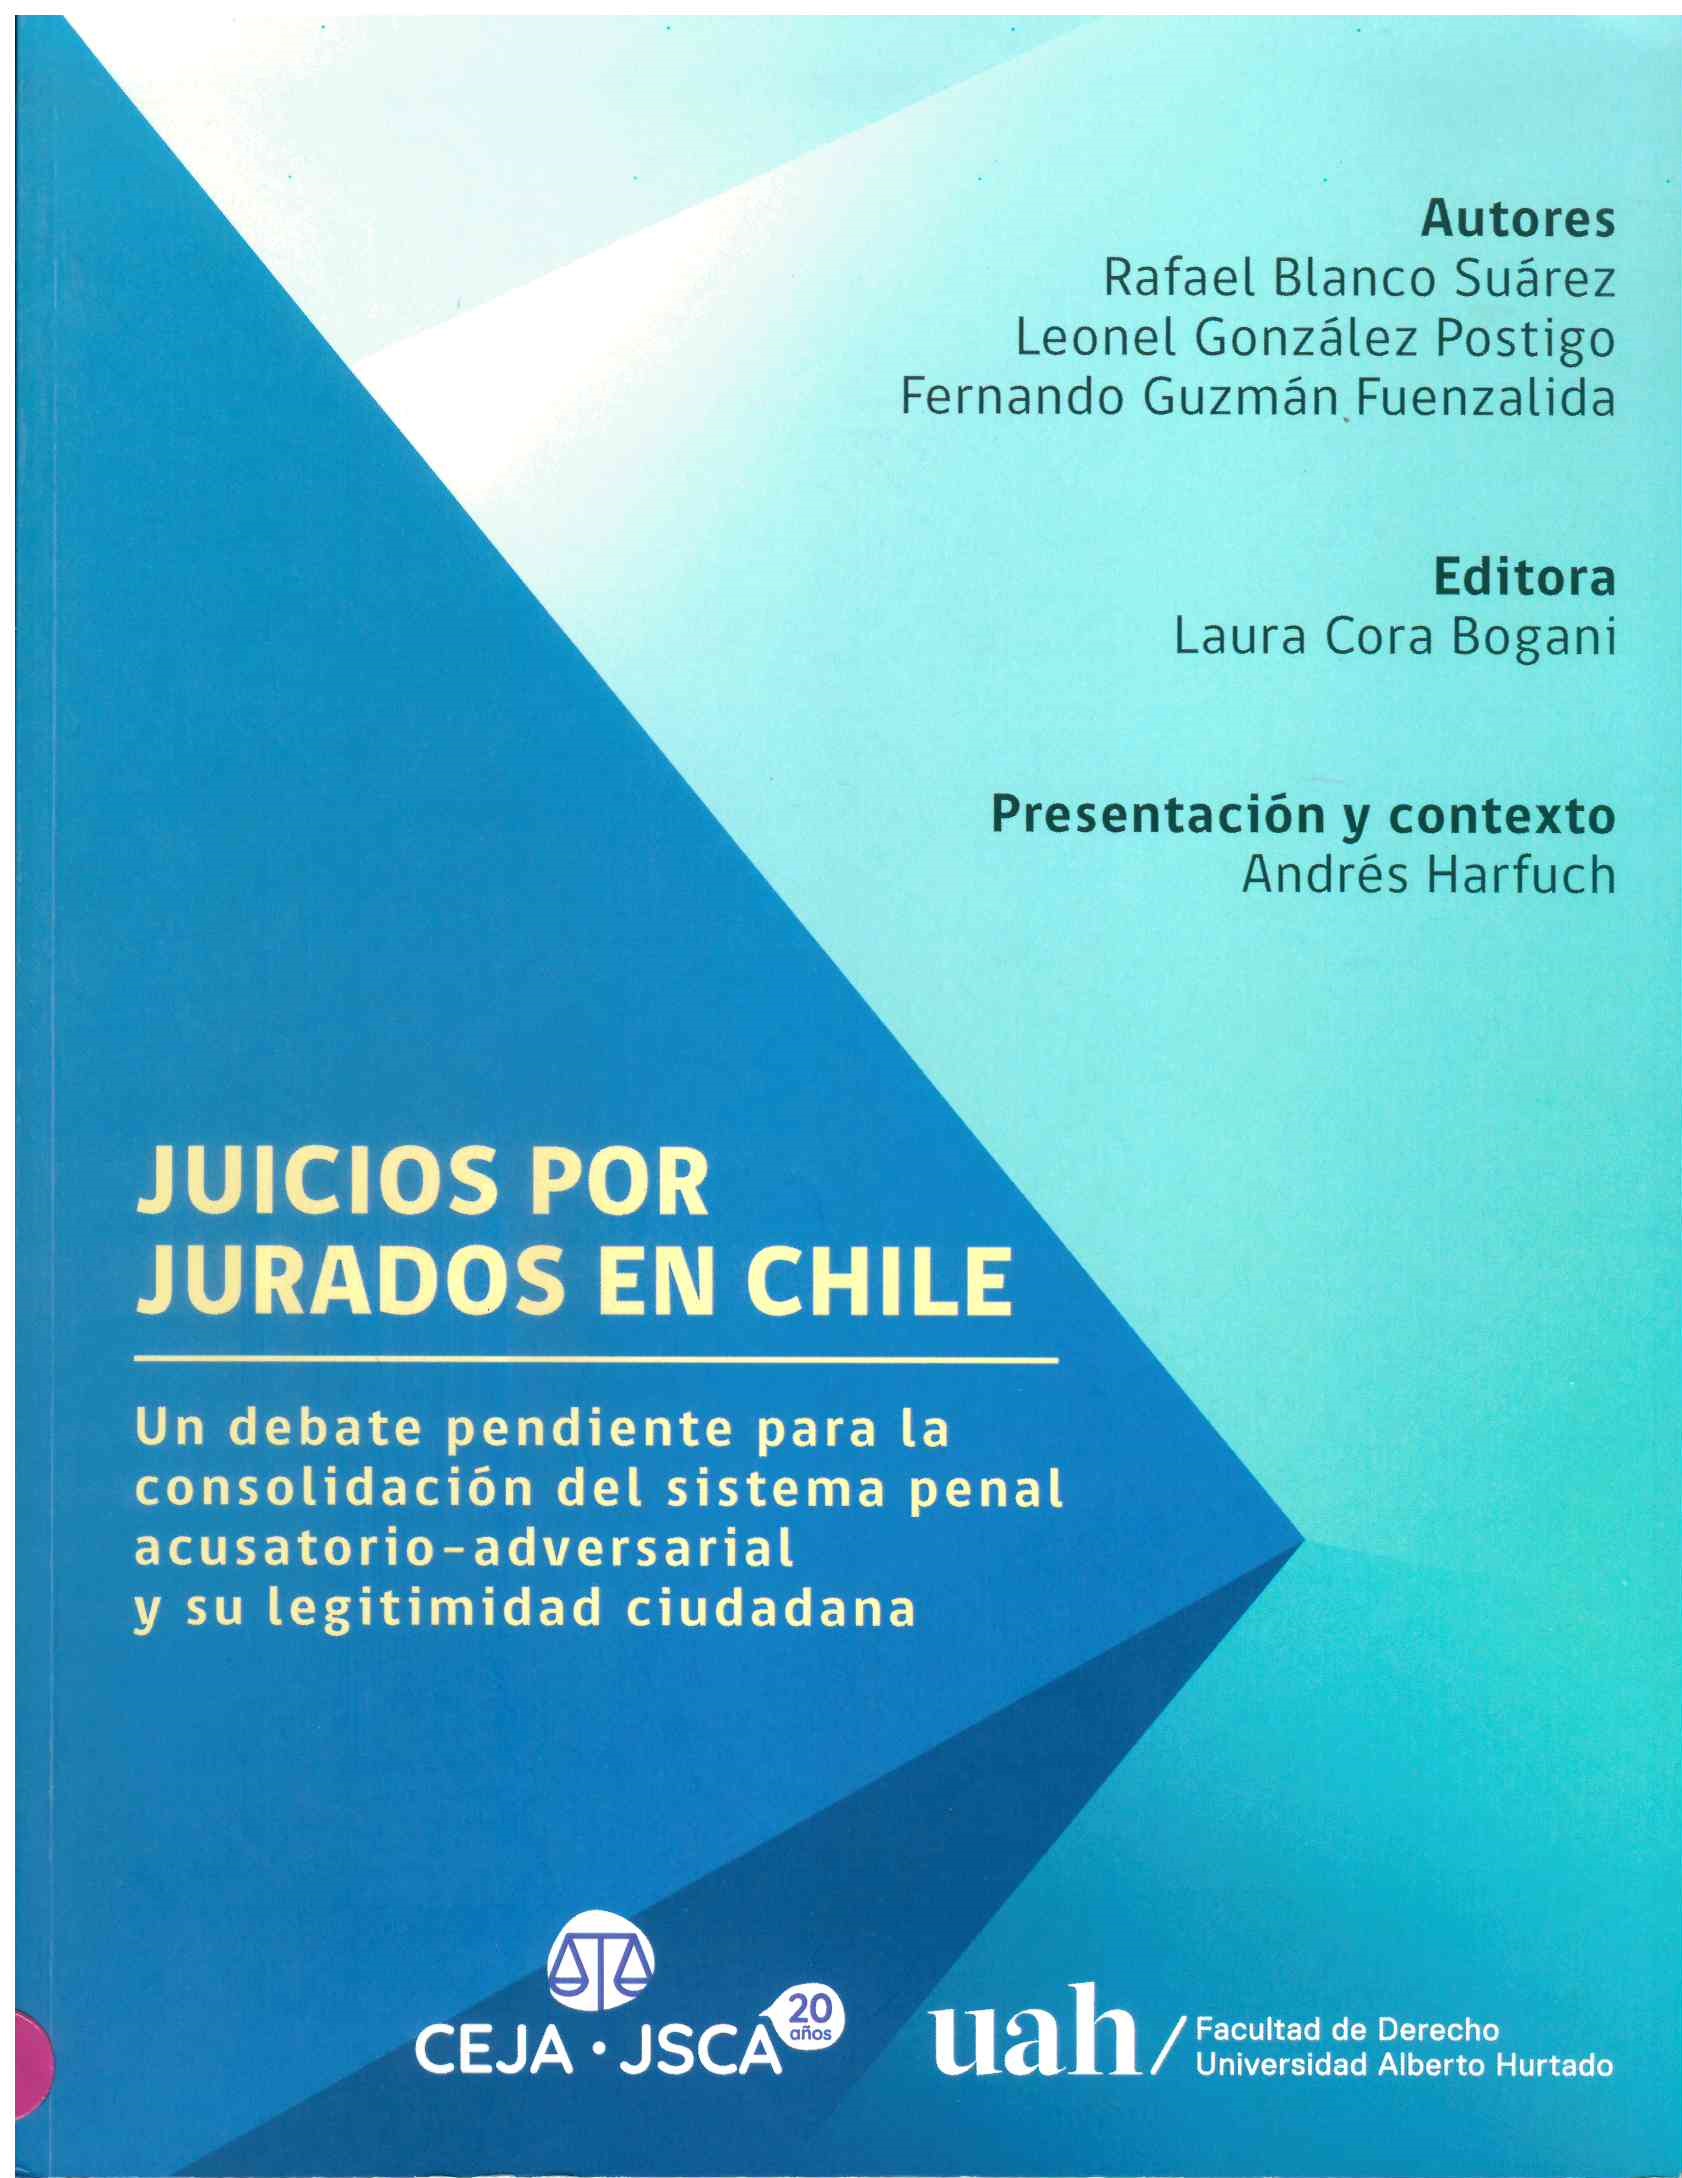 Juicios por Jurados en Chile. Un debate pendiente para la consolidación del sistema penal acusatorio-adversarial y su legitimidad ciudadana